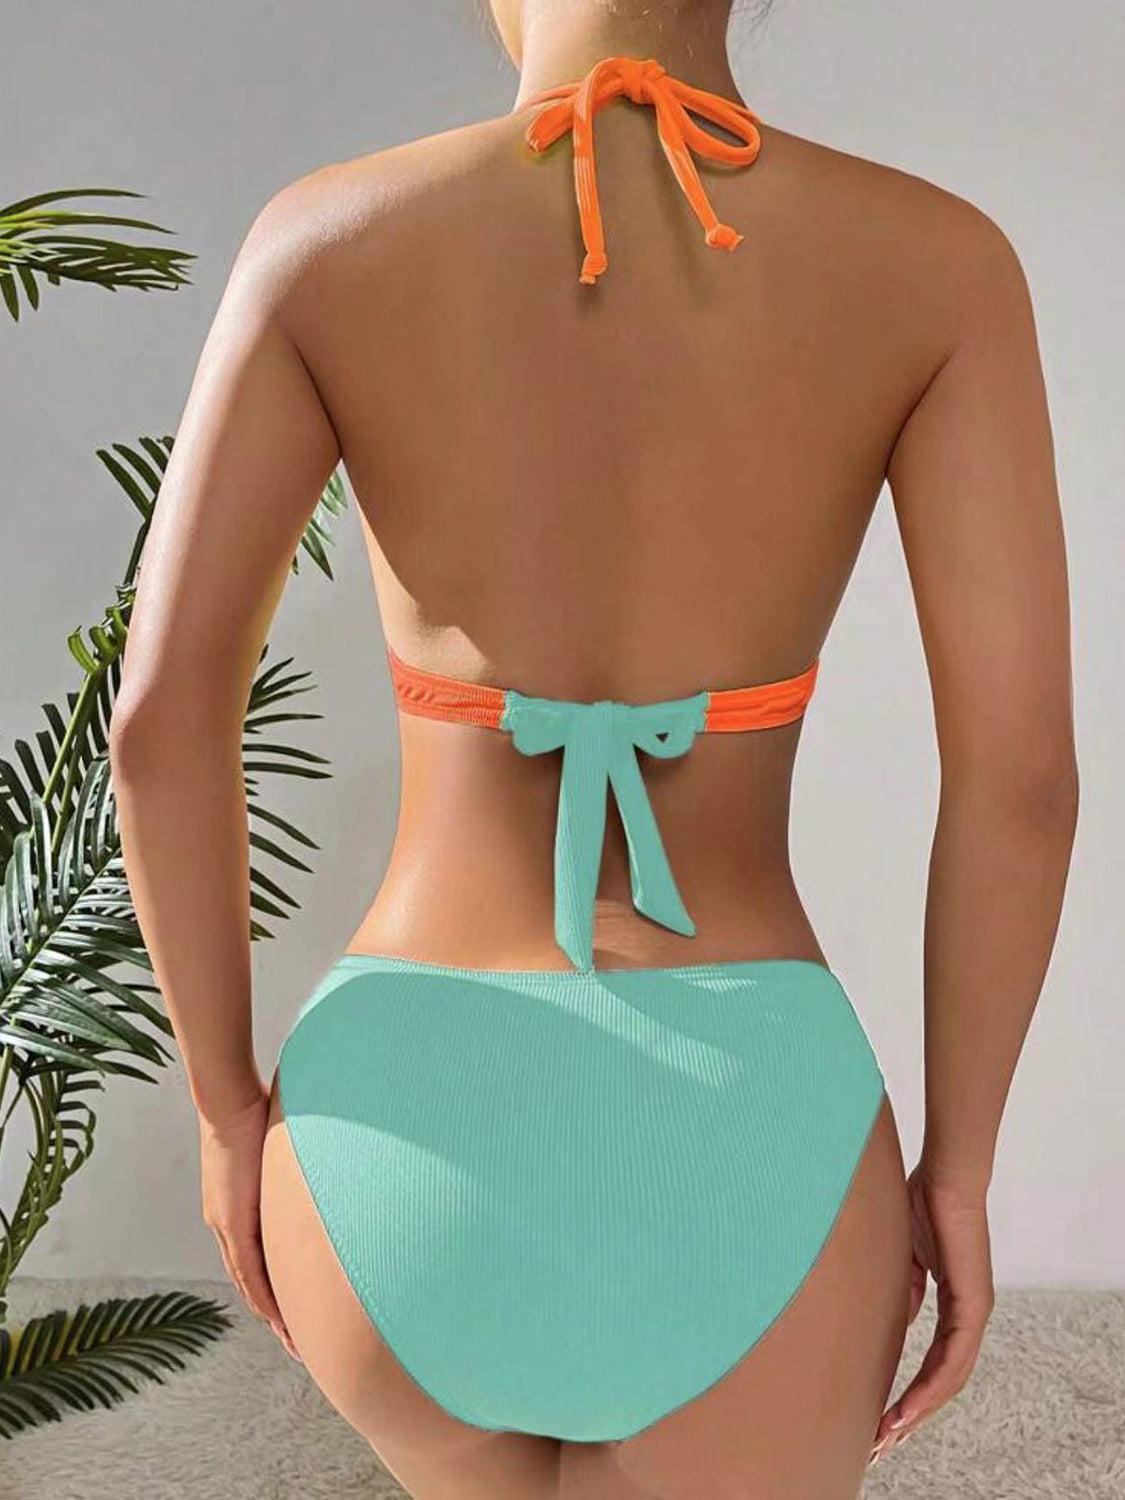 a woman in a bikini top and panties